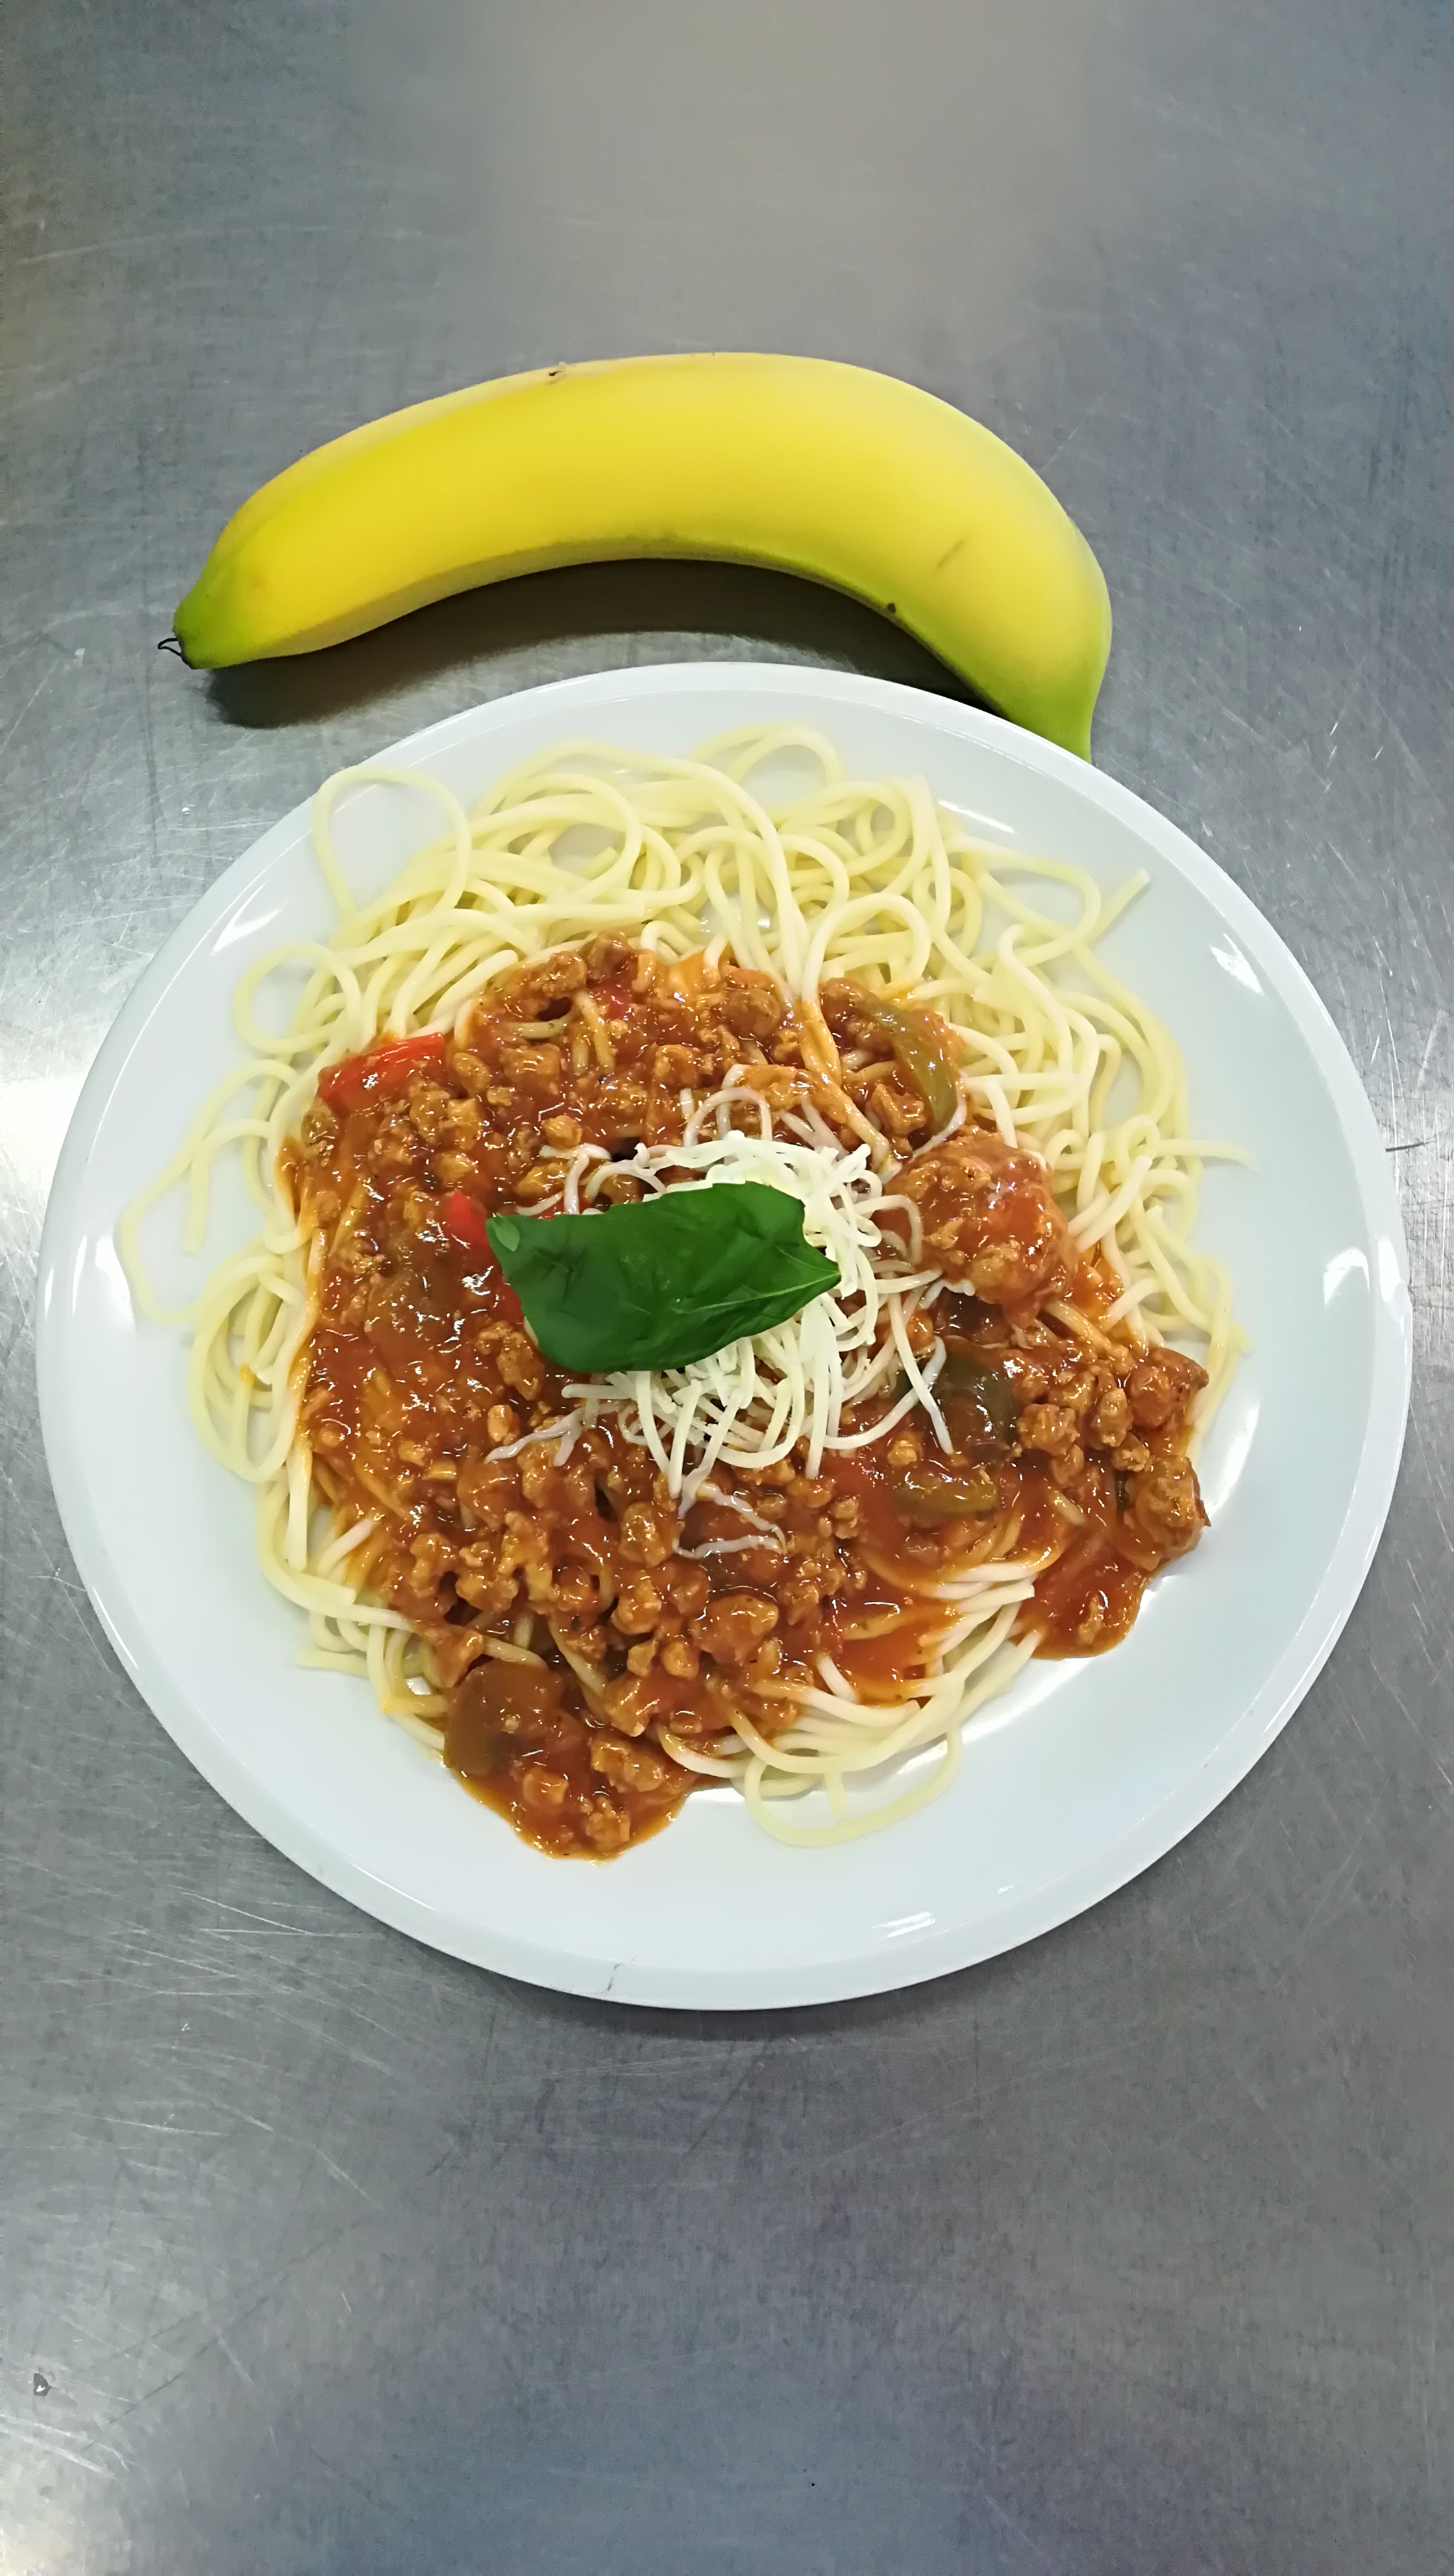 Špagety s boloňskou omáčkou, strouhaný sýr